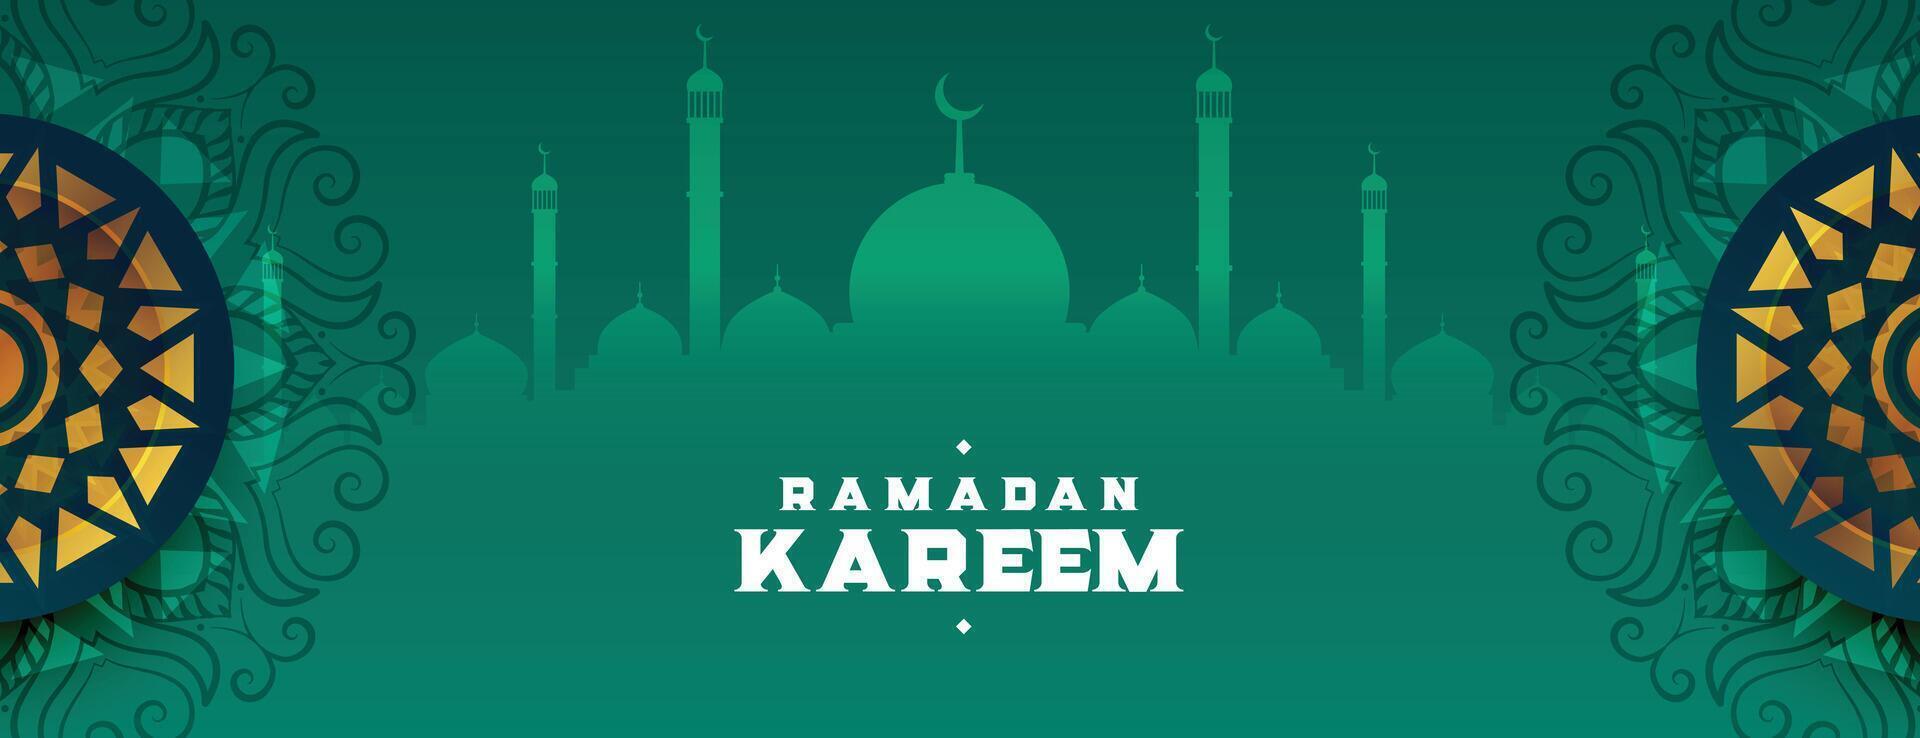 dekorativ ramadan kareem islamic baner med arabesk dekoration vektor